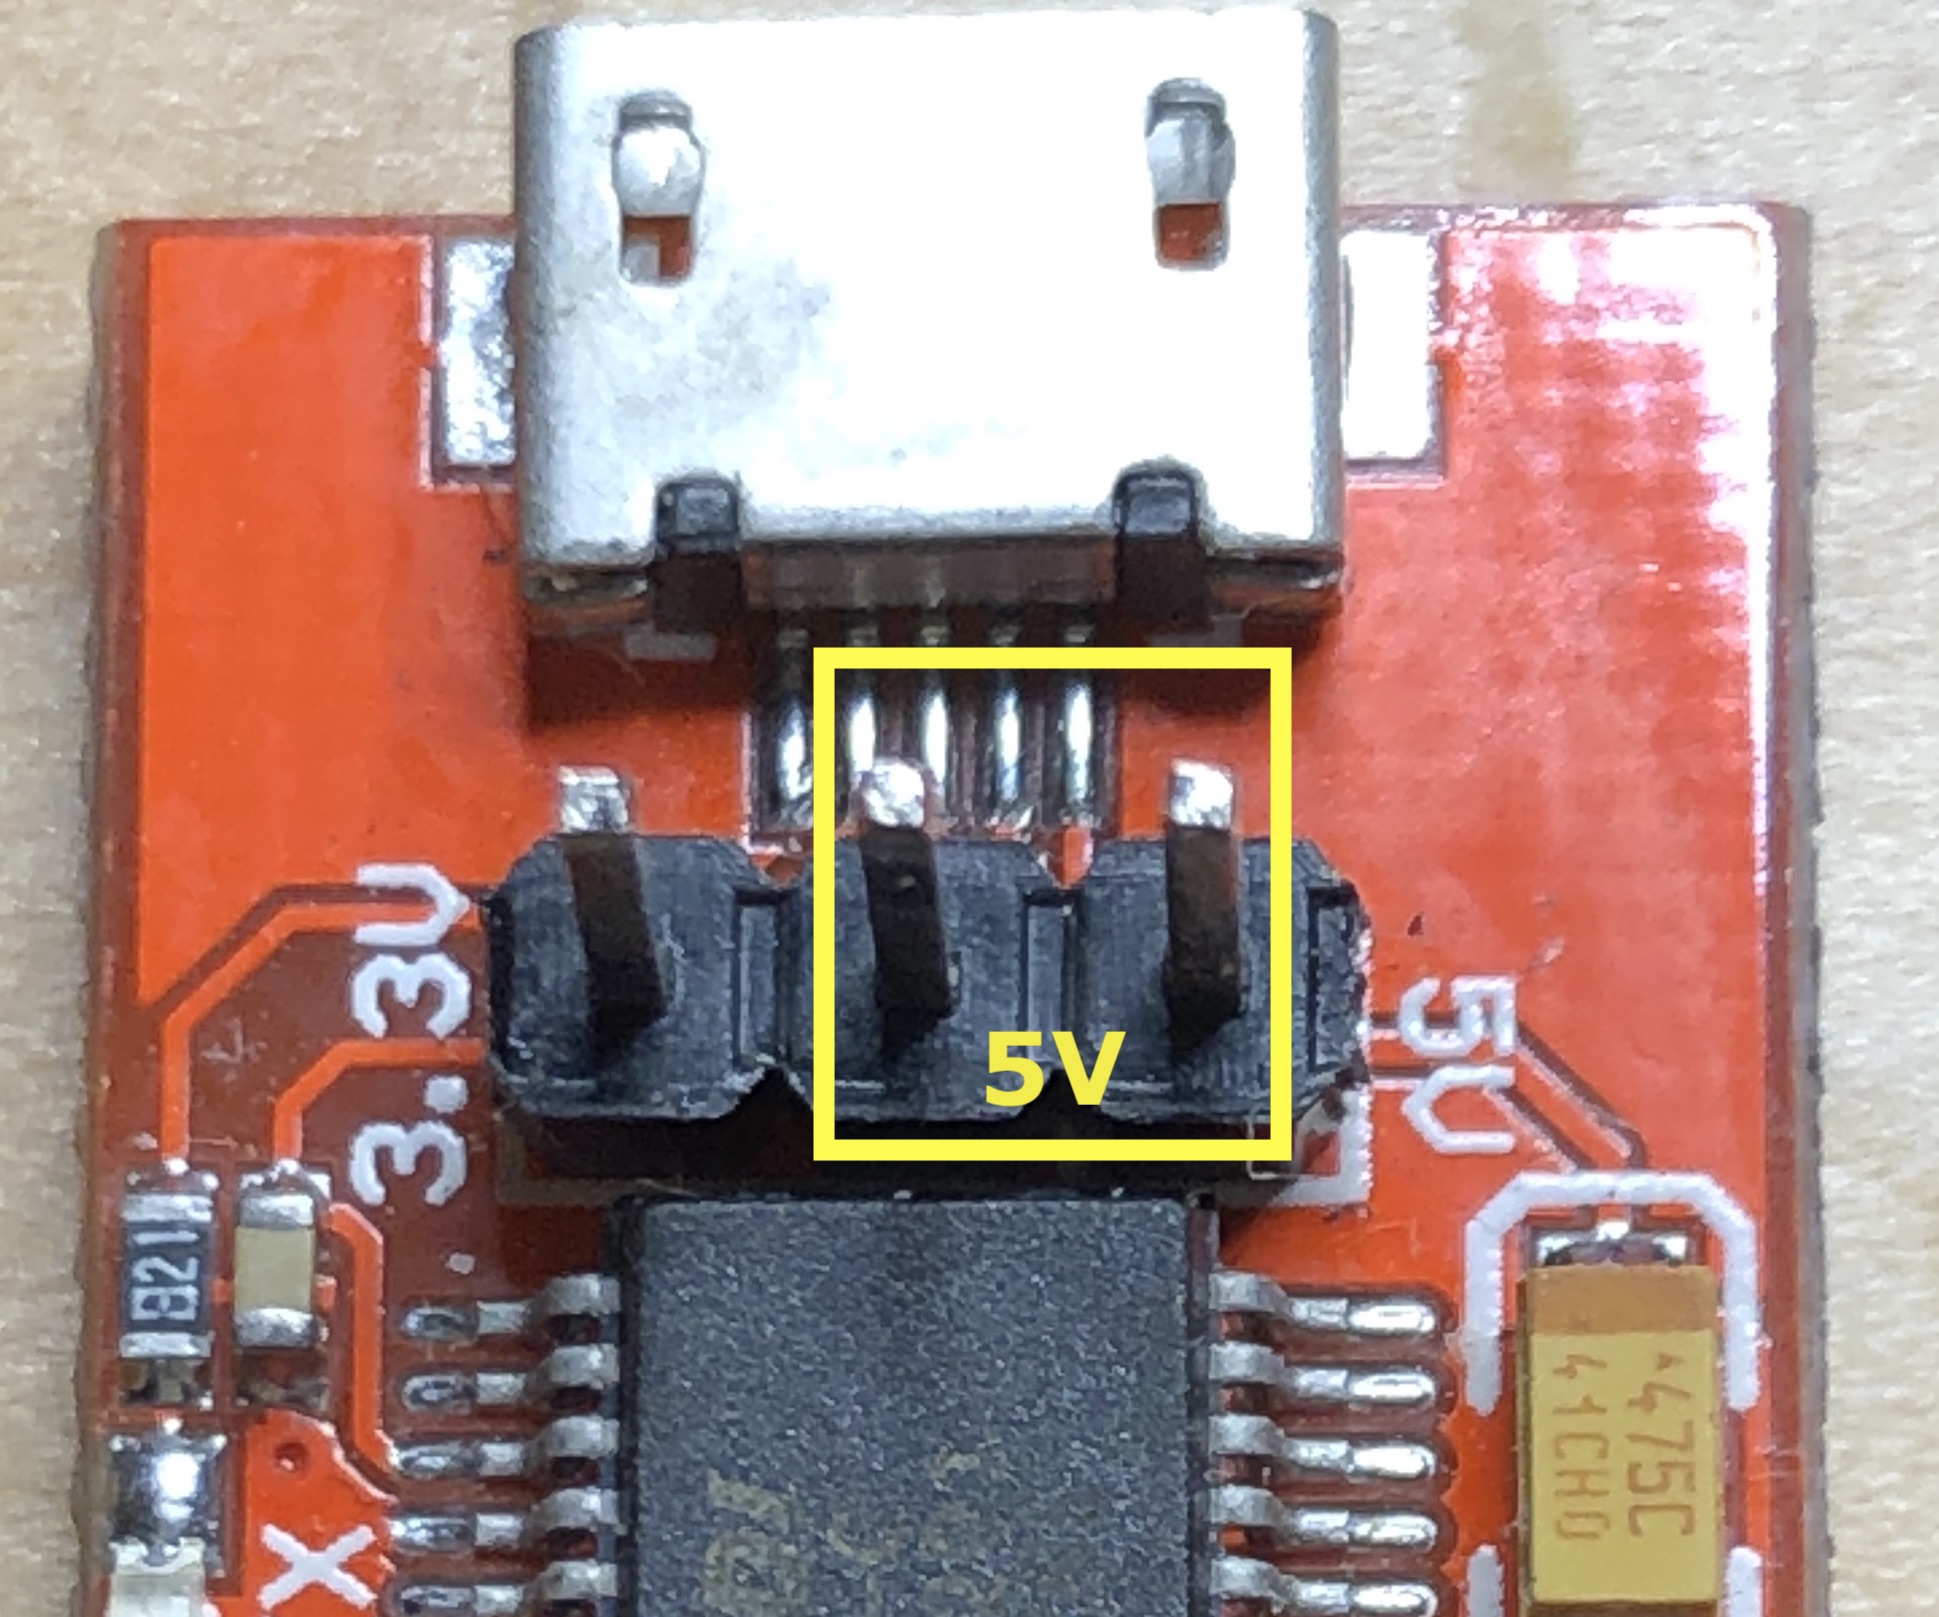 FTDI pin combination for 5V